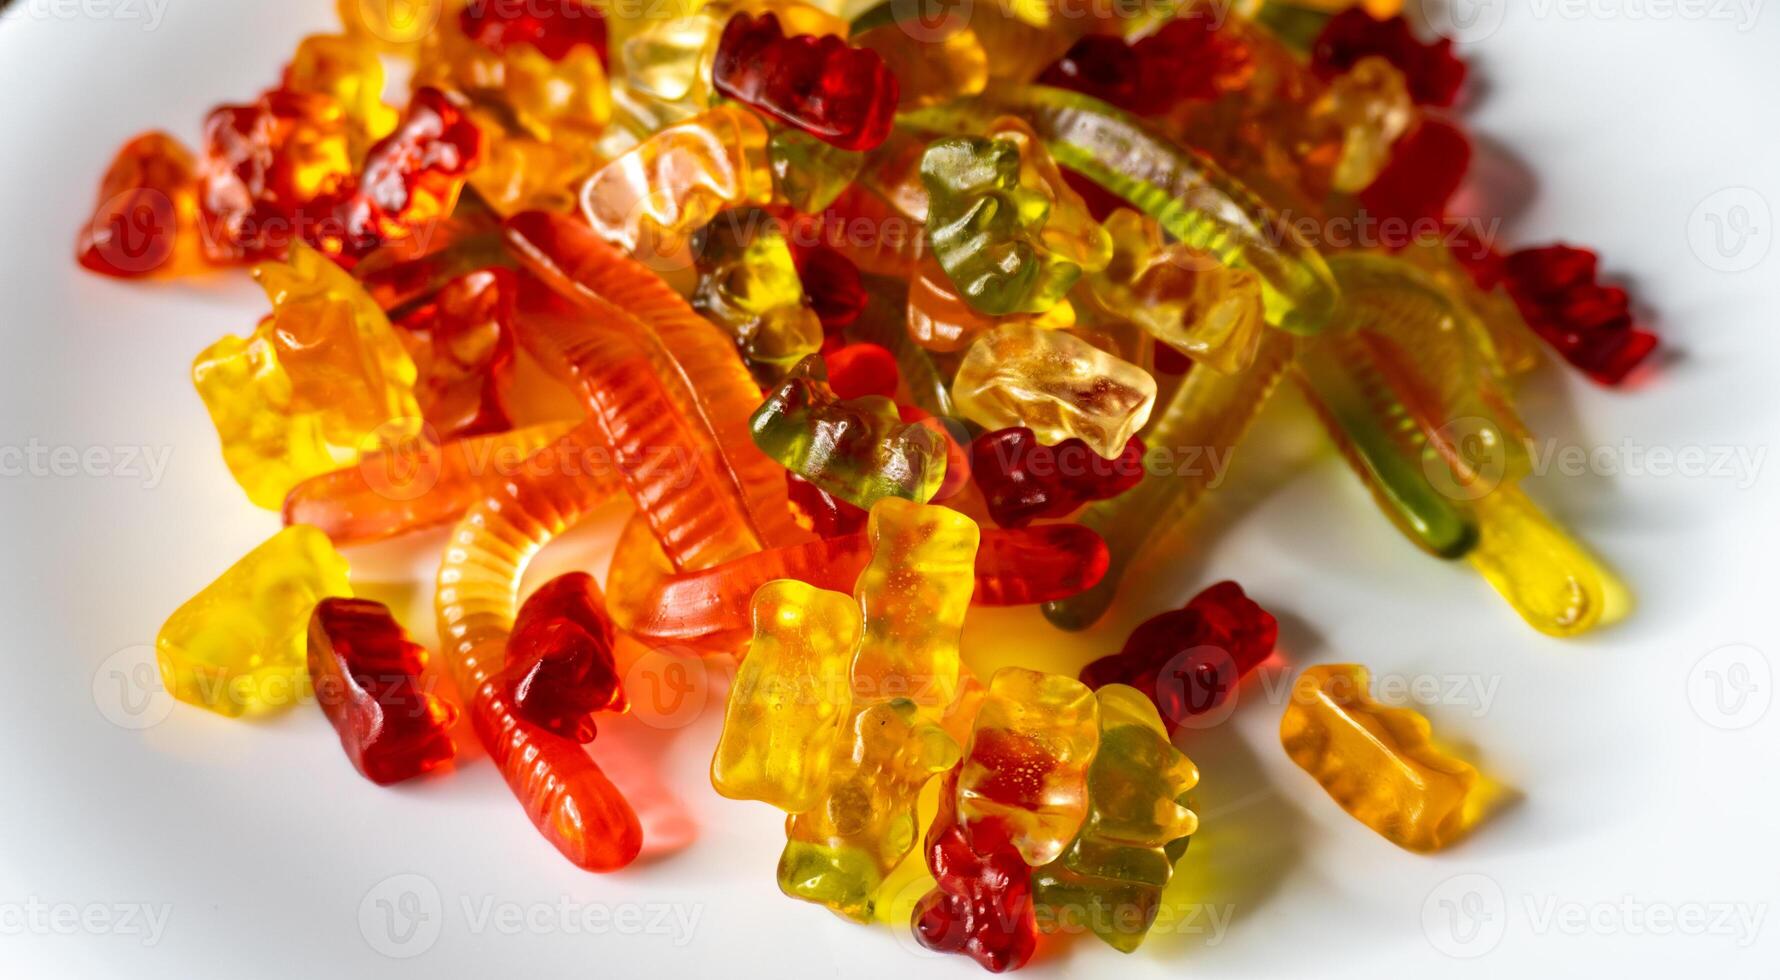 gelé klibbig björnar och ormar färgrik frukt gummi godis foto